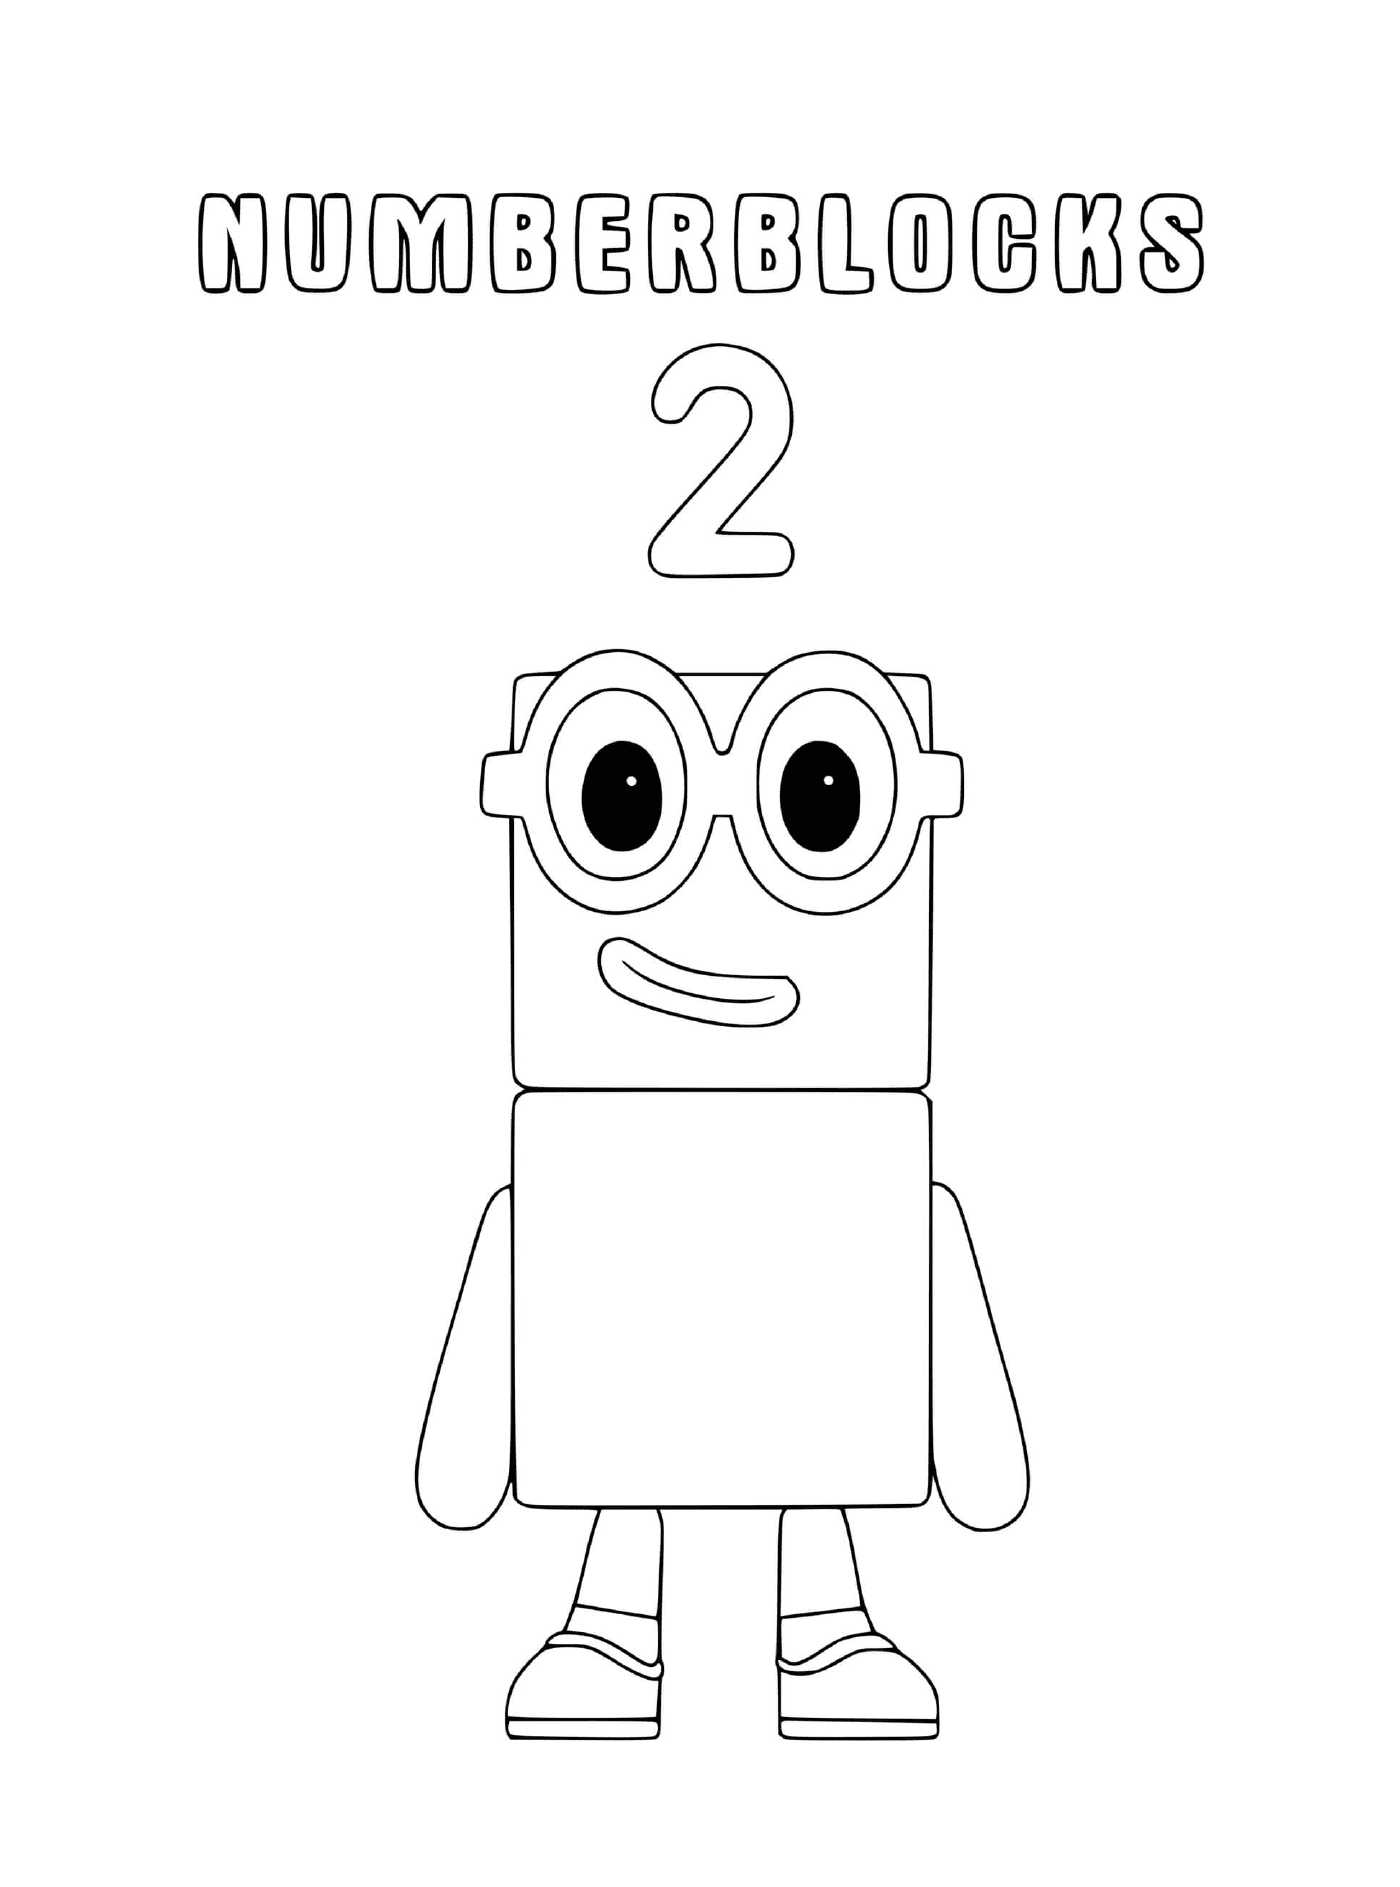  Numberblocks número 2, un robot futurista 